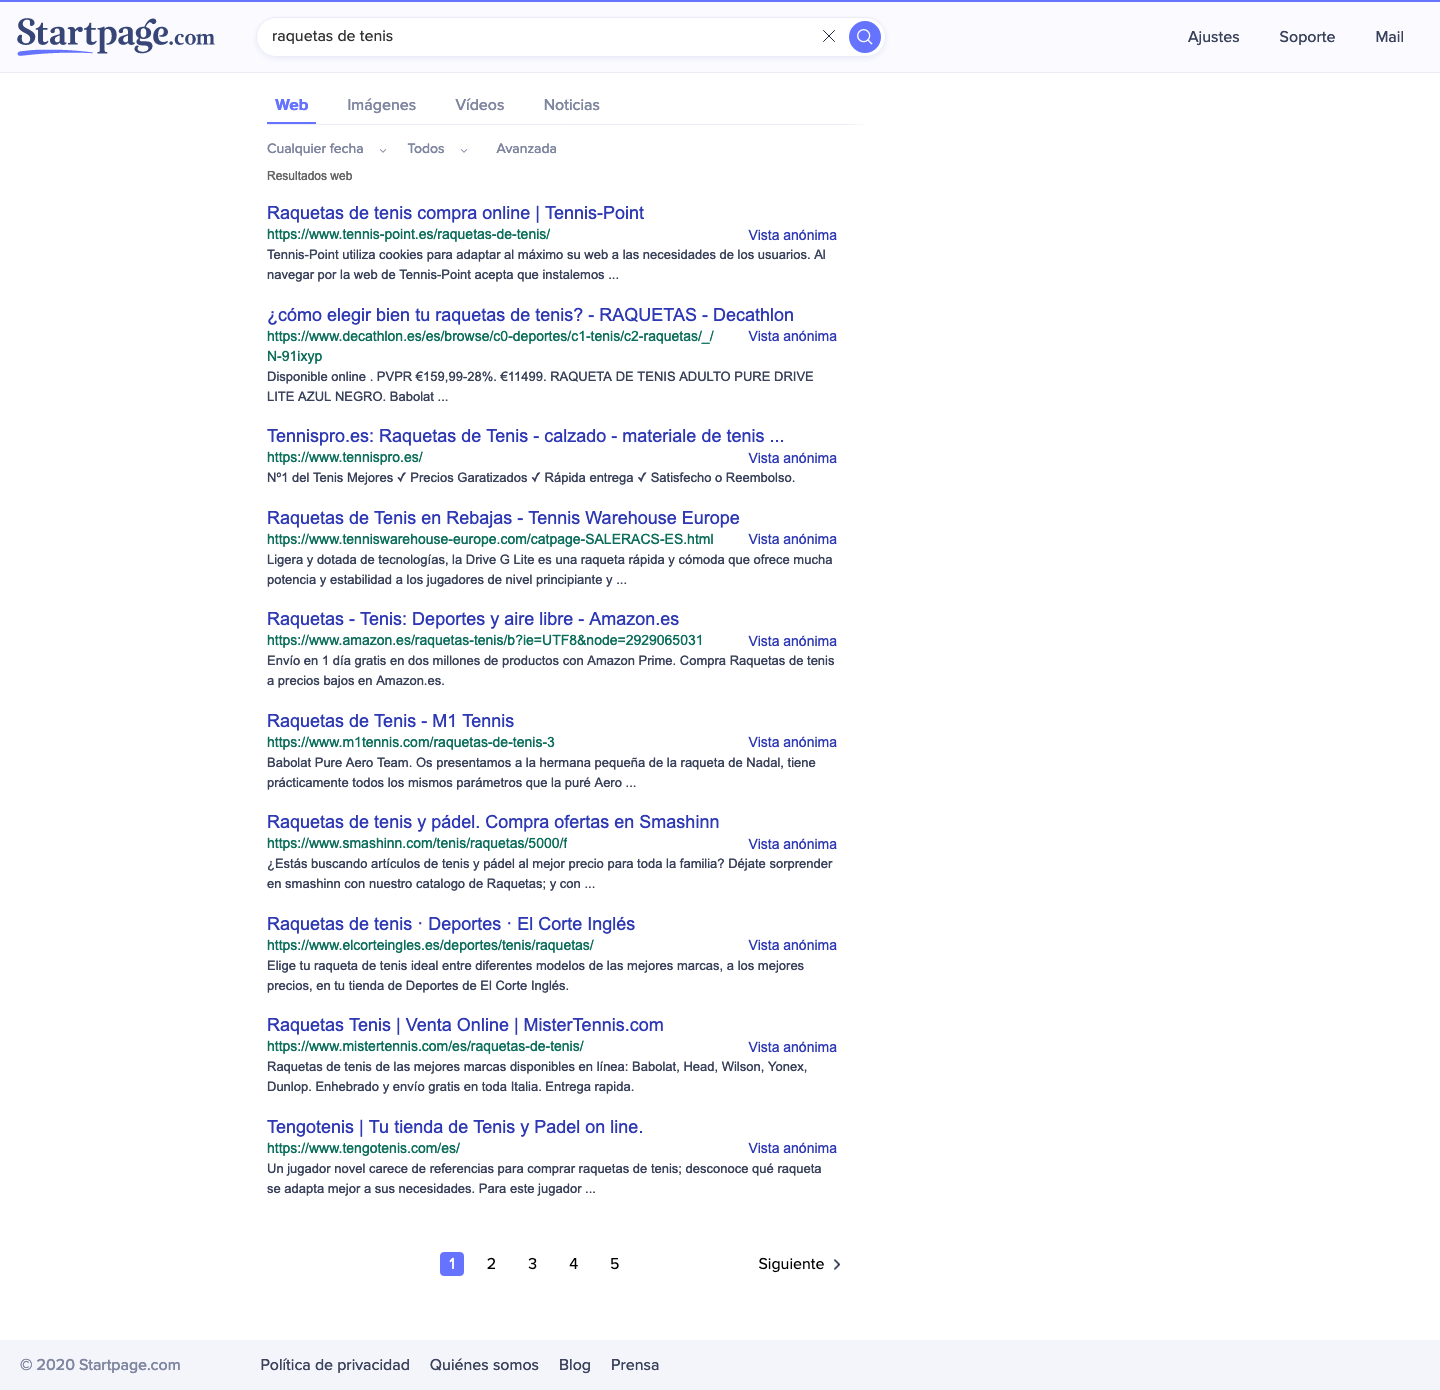 Resultados de búsqueda en StartPage